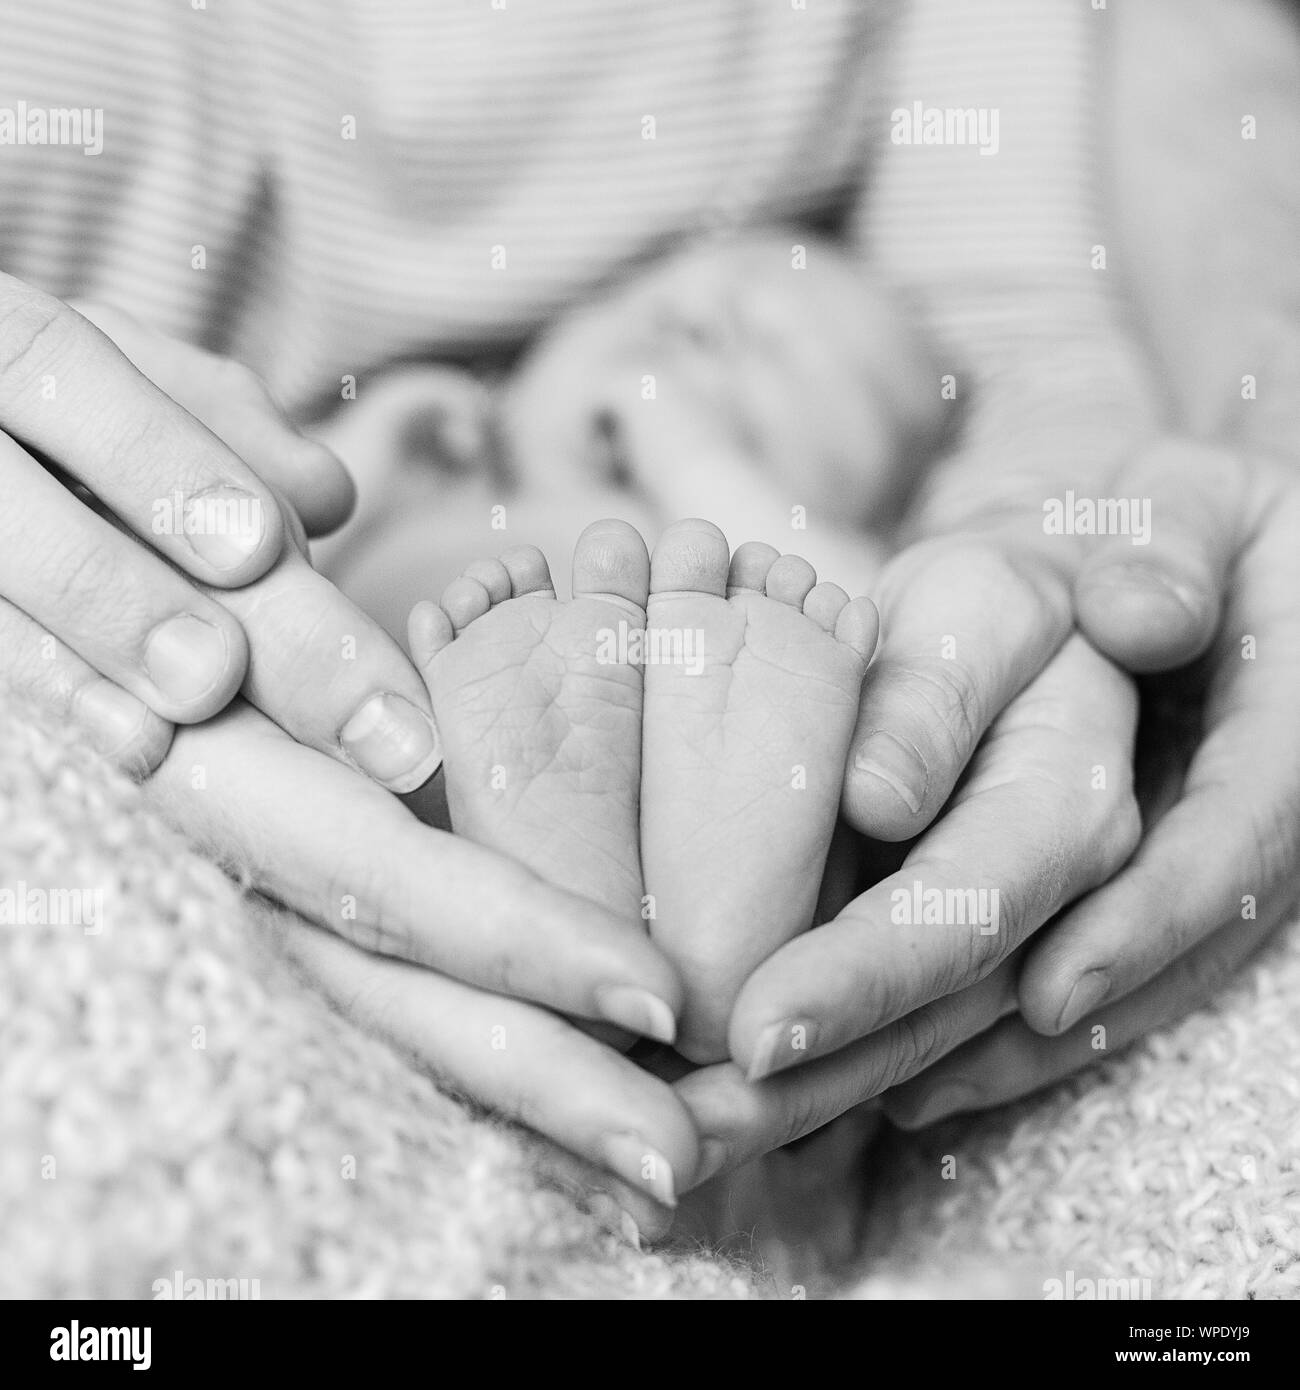 Füße von neugeborenen Babys Füße in übergeordneten Hände, ein schwarz-weiß Foto. Geburt, Glück und glückliche Familie Konzept Stockfoto